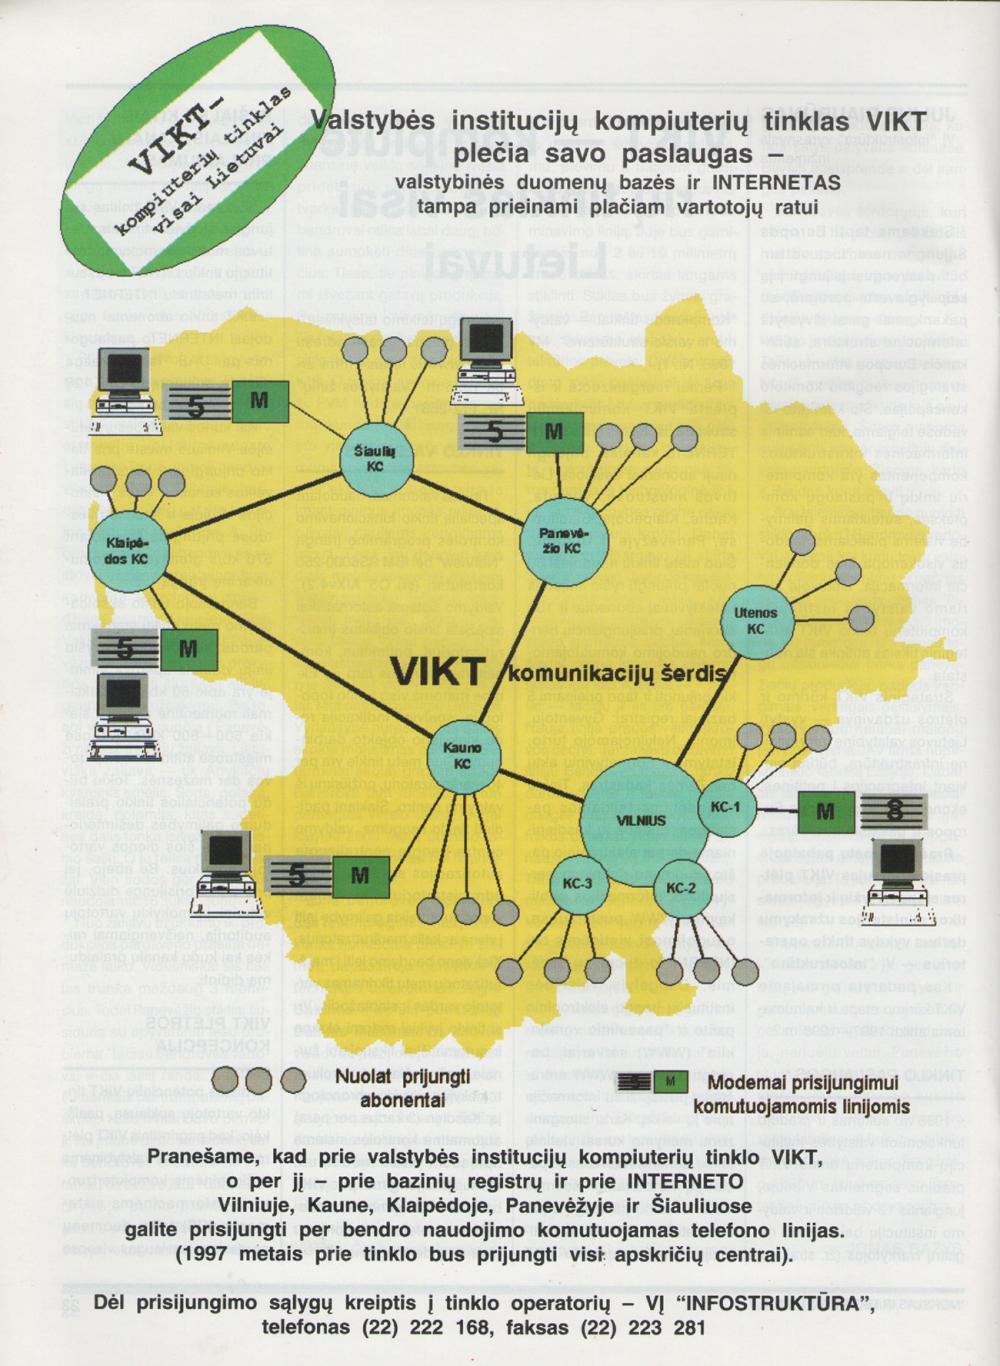 Valstybės institucijų kompiuterių tinklas VIKT plečia savo paslaugas